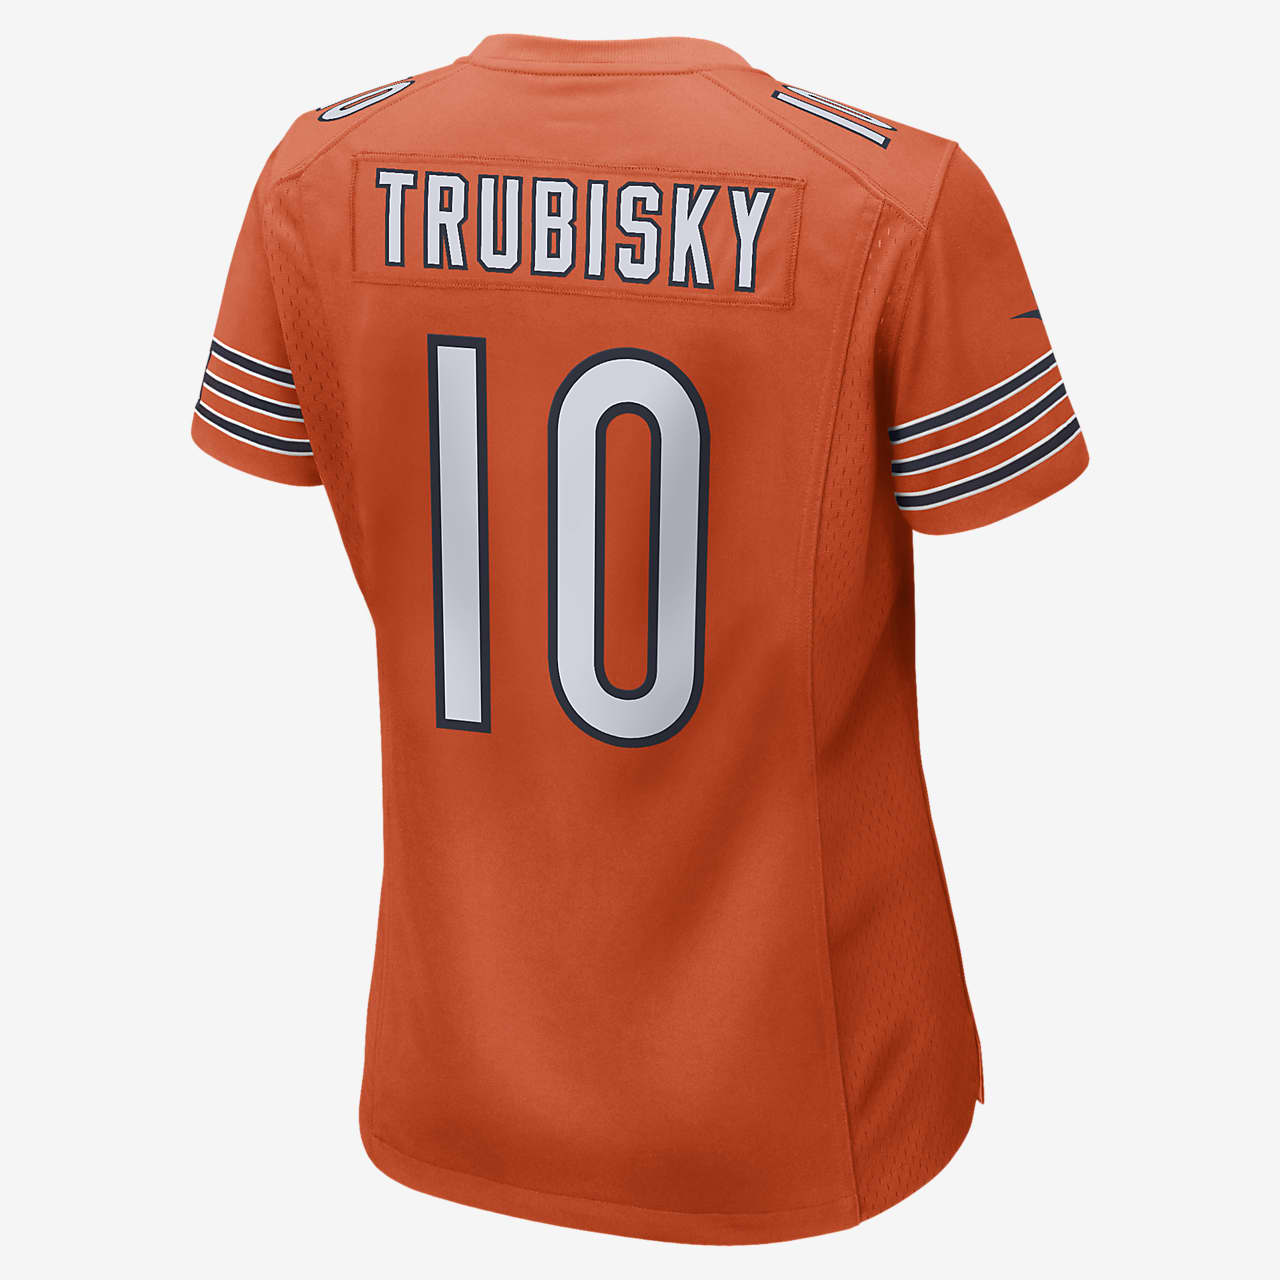 trubisky signed jersey